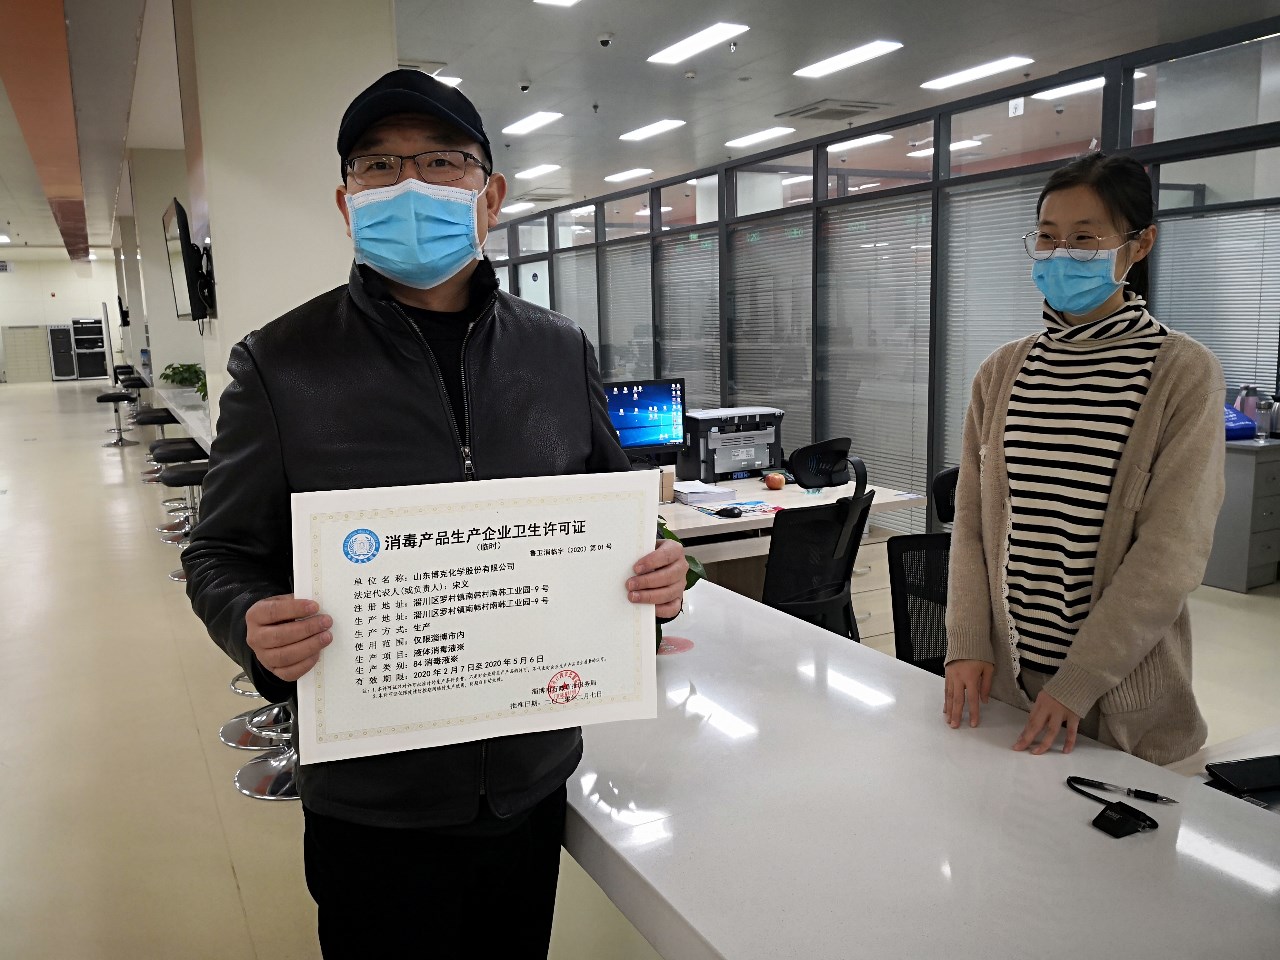 2月7日，在淄博市行政审批服务局办事大厅内，山东博克化学股份有限公司总经理宋义当天就领到了临时卫生许可证。